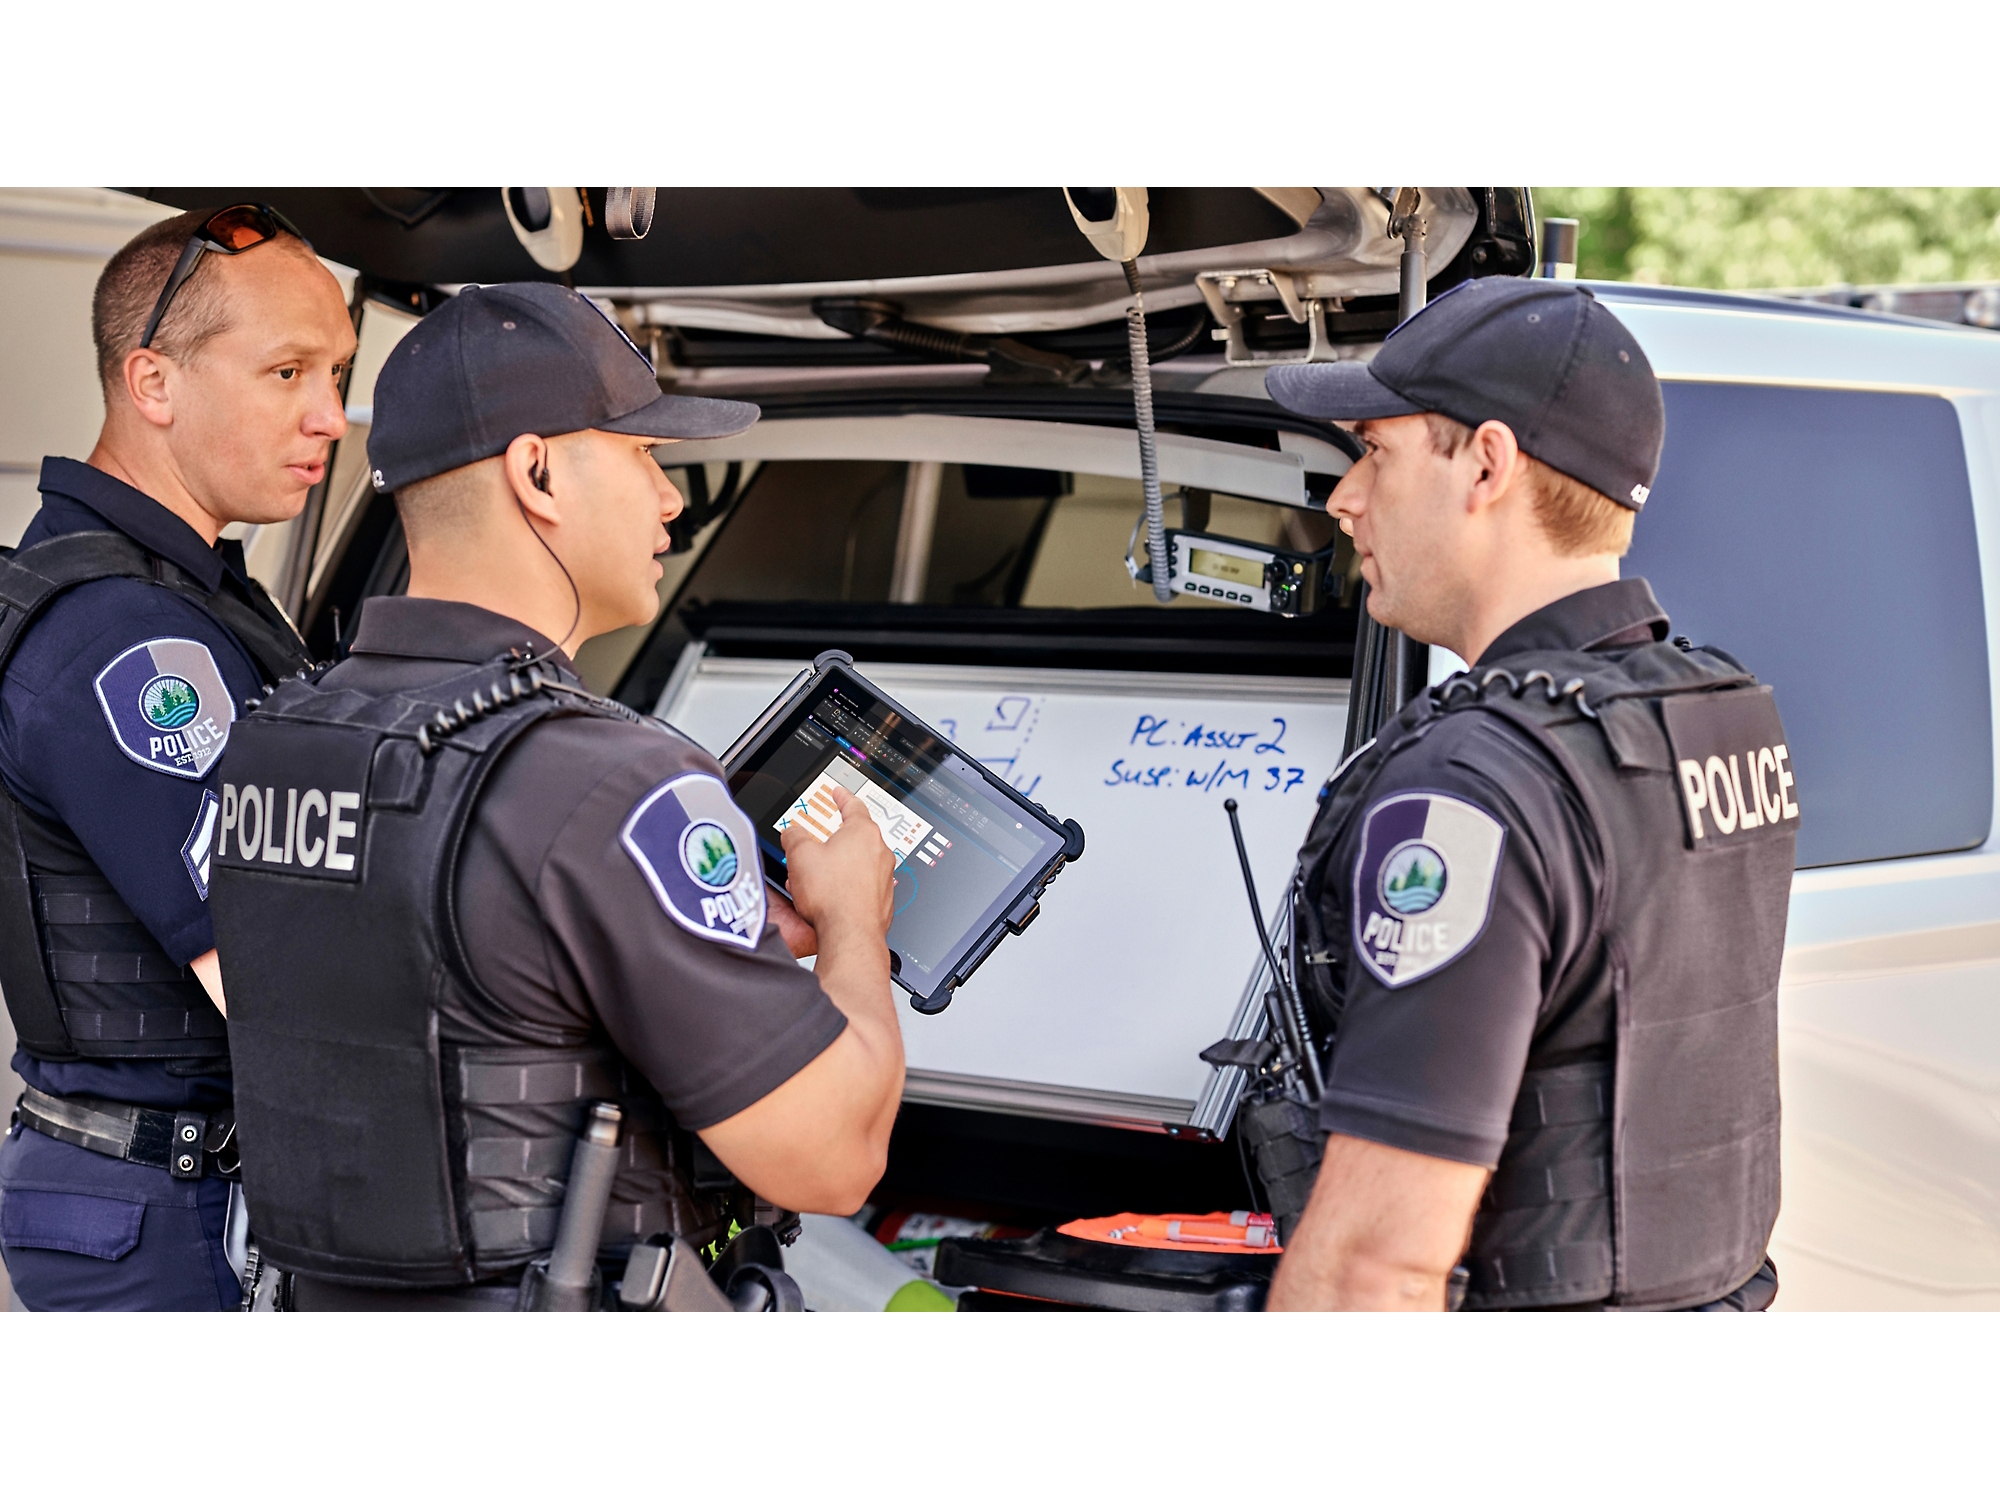 Троє поліцейських переглядають інформацію на цифровому планшеті біля свого патрульного автомобіля з відкритим багажником